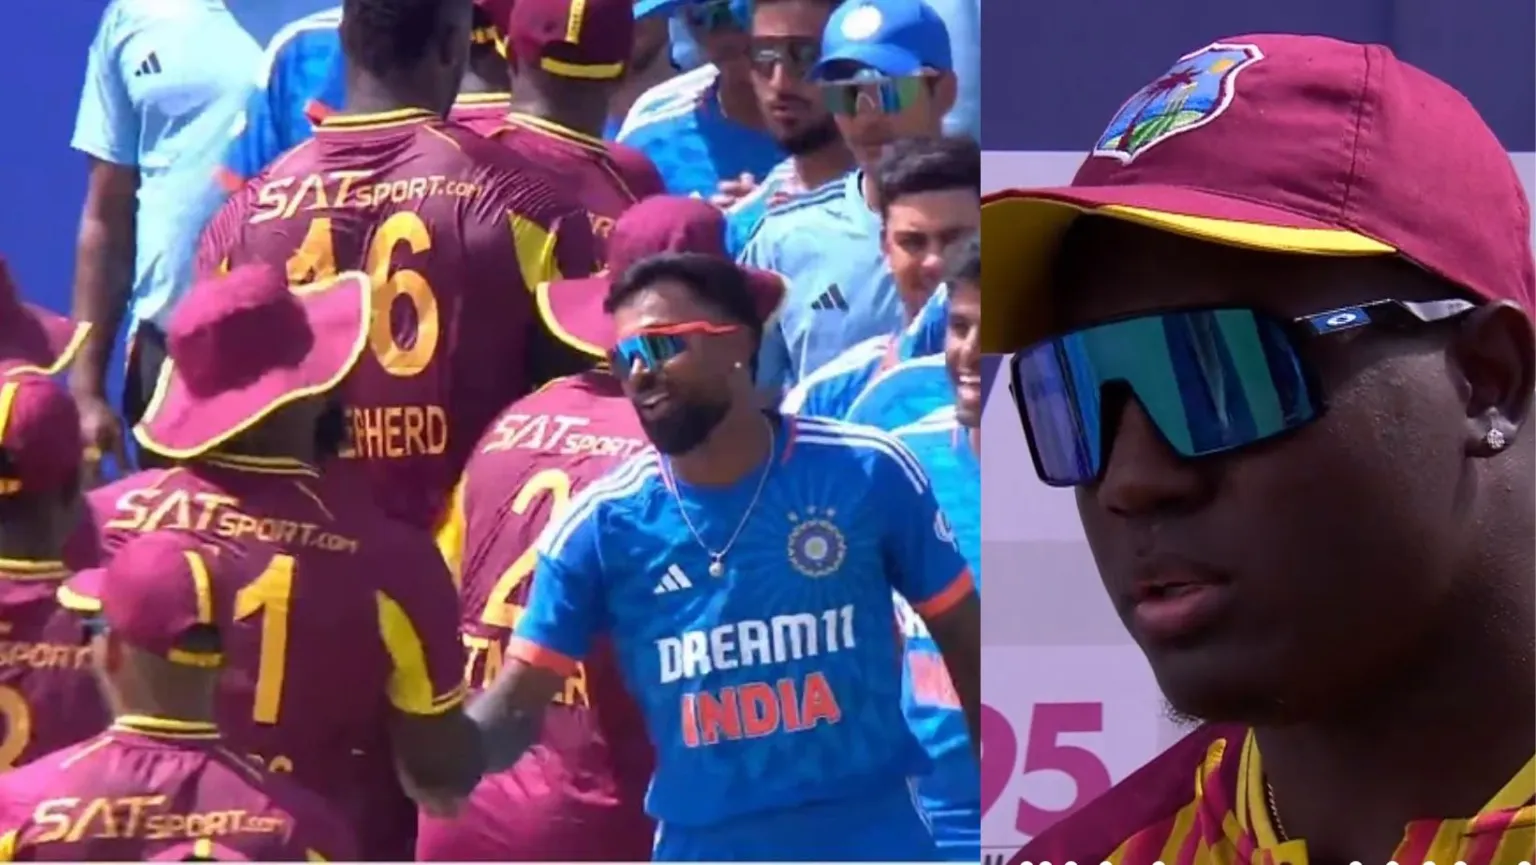 “भारत के पास बल्लेबाज ही नहीं…”, पहले T20 में जीत के बाद वेस्टइंडीज कप्तान ने कसा तंज, टीम इंडिया की गिनाई कमियां